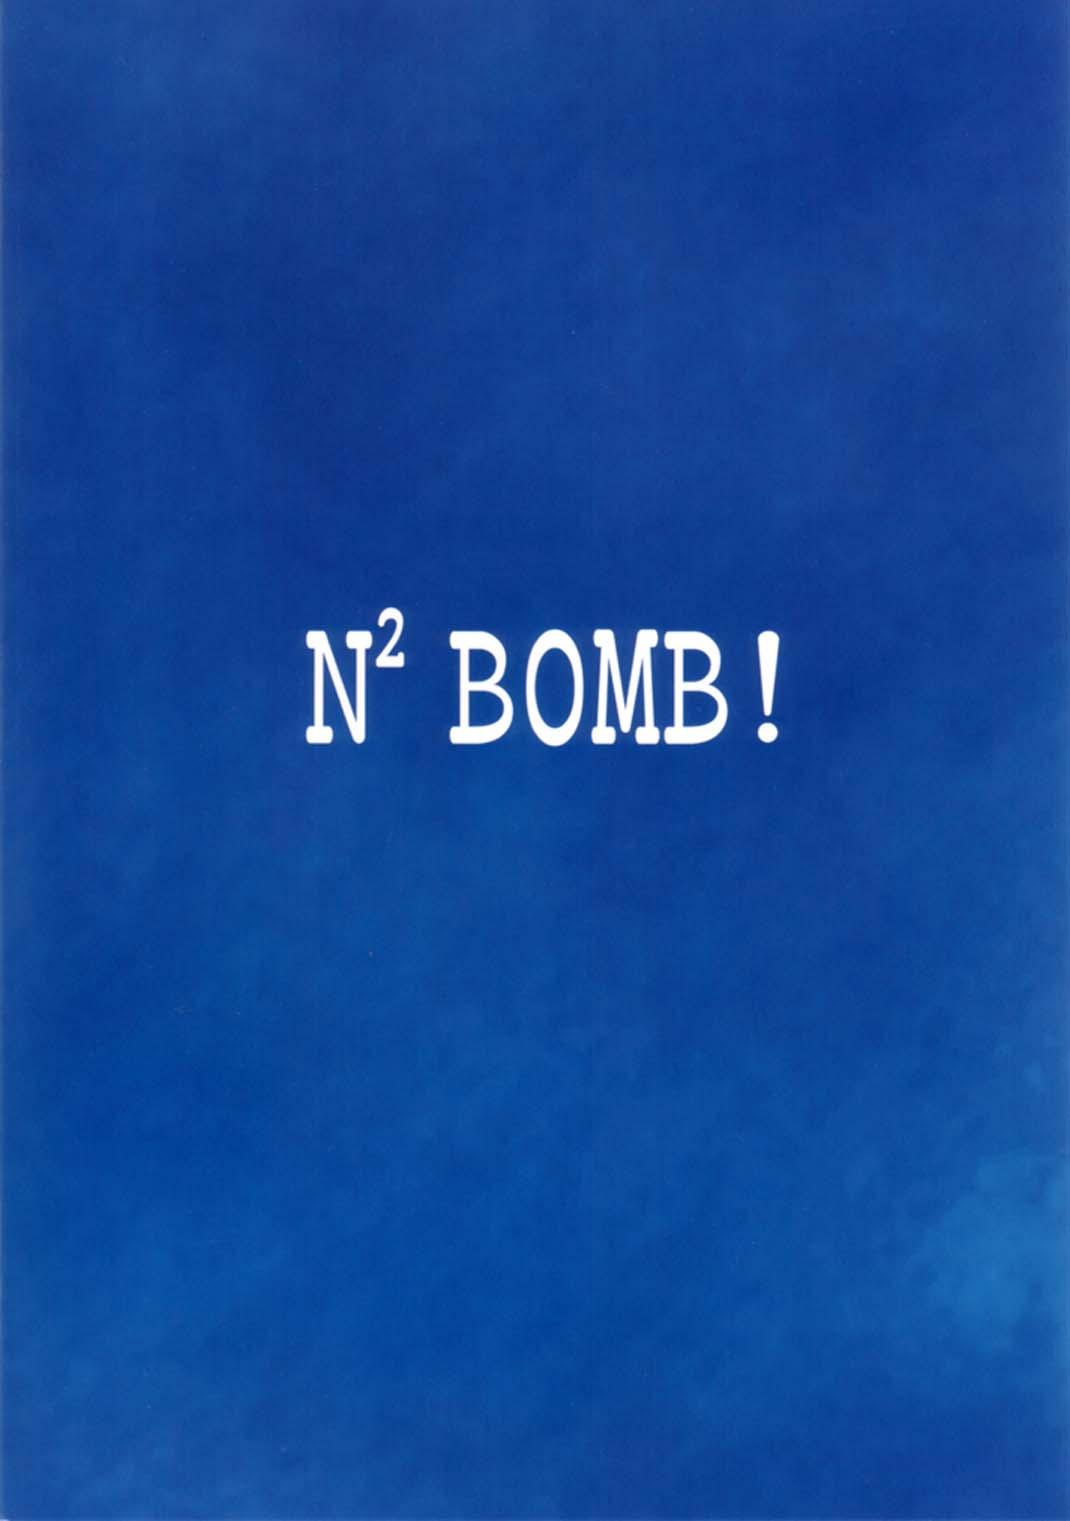 N2 BOMB! 59